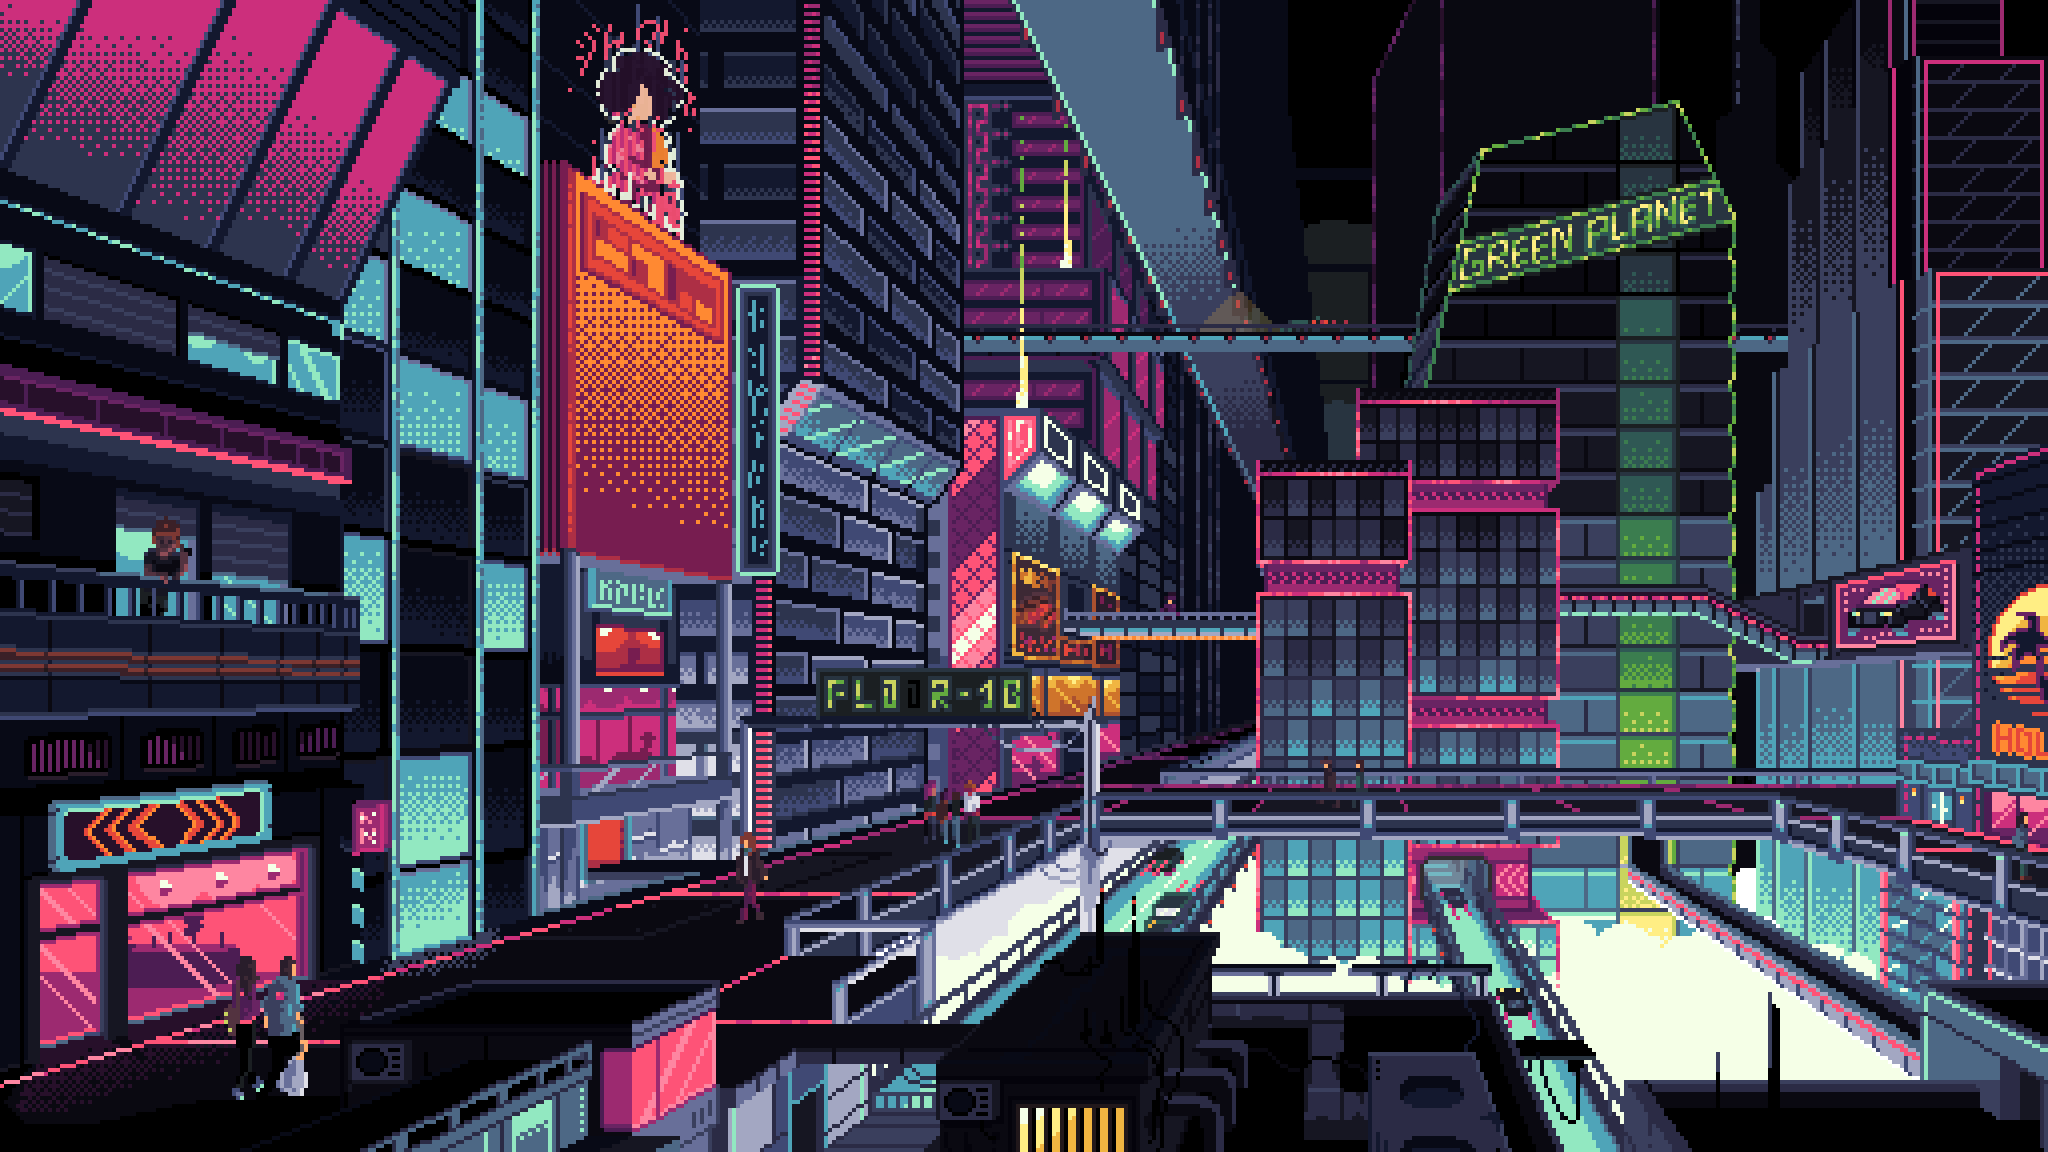 Total Imagen Cyberpunk City Background Thptletrongtan Edu Vn